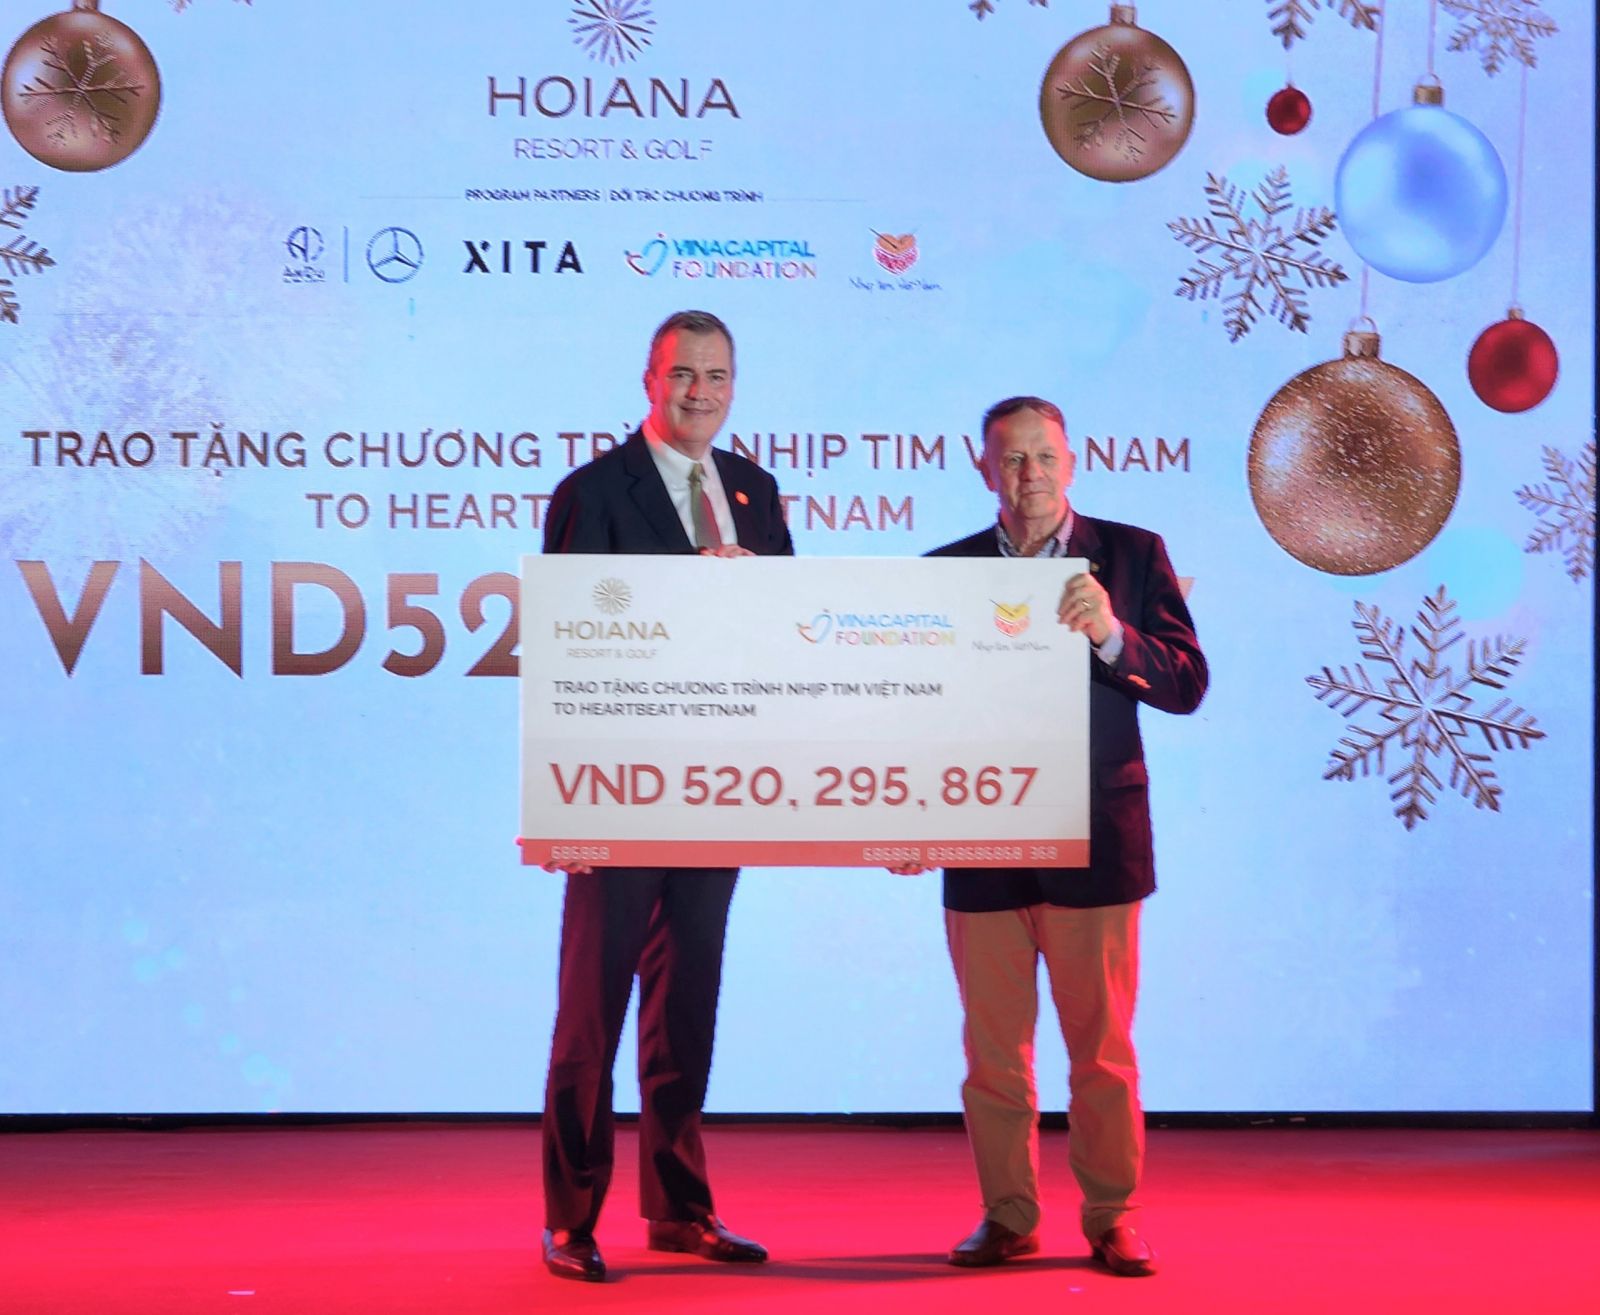 Đại diện Hoiana Resort & Golf trao tặng bảng biểu trưng số tiền quyên góp đến chương trình Nhịp tim Việt Nam.